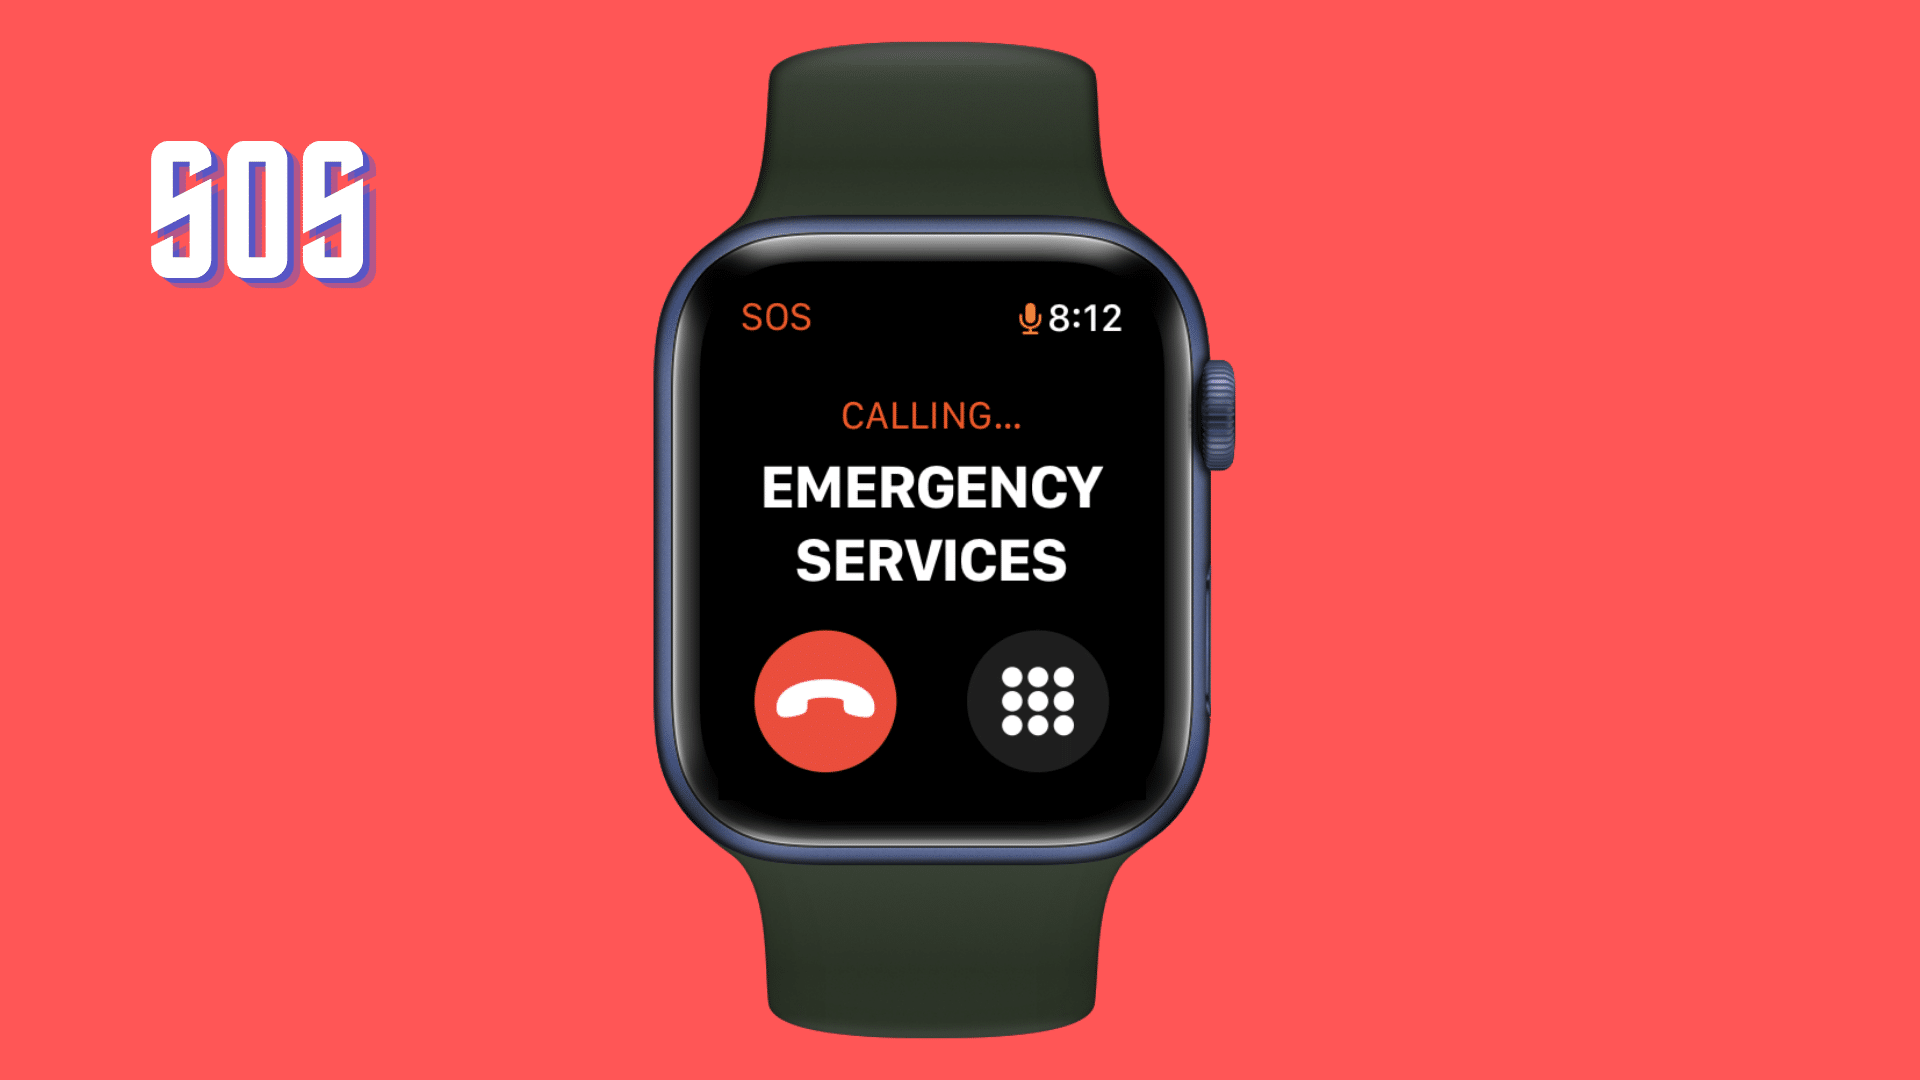 Comment utiliser la fonction SOS d'urgence d'Apple Watch 